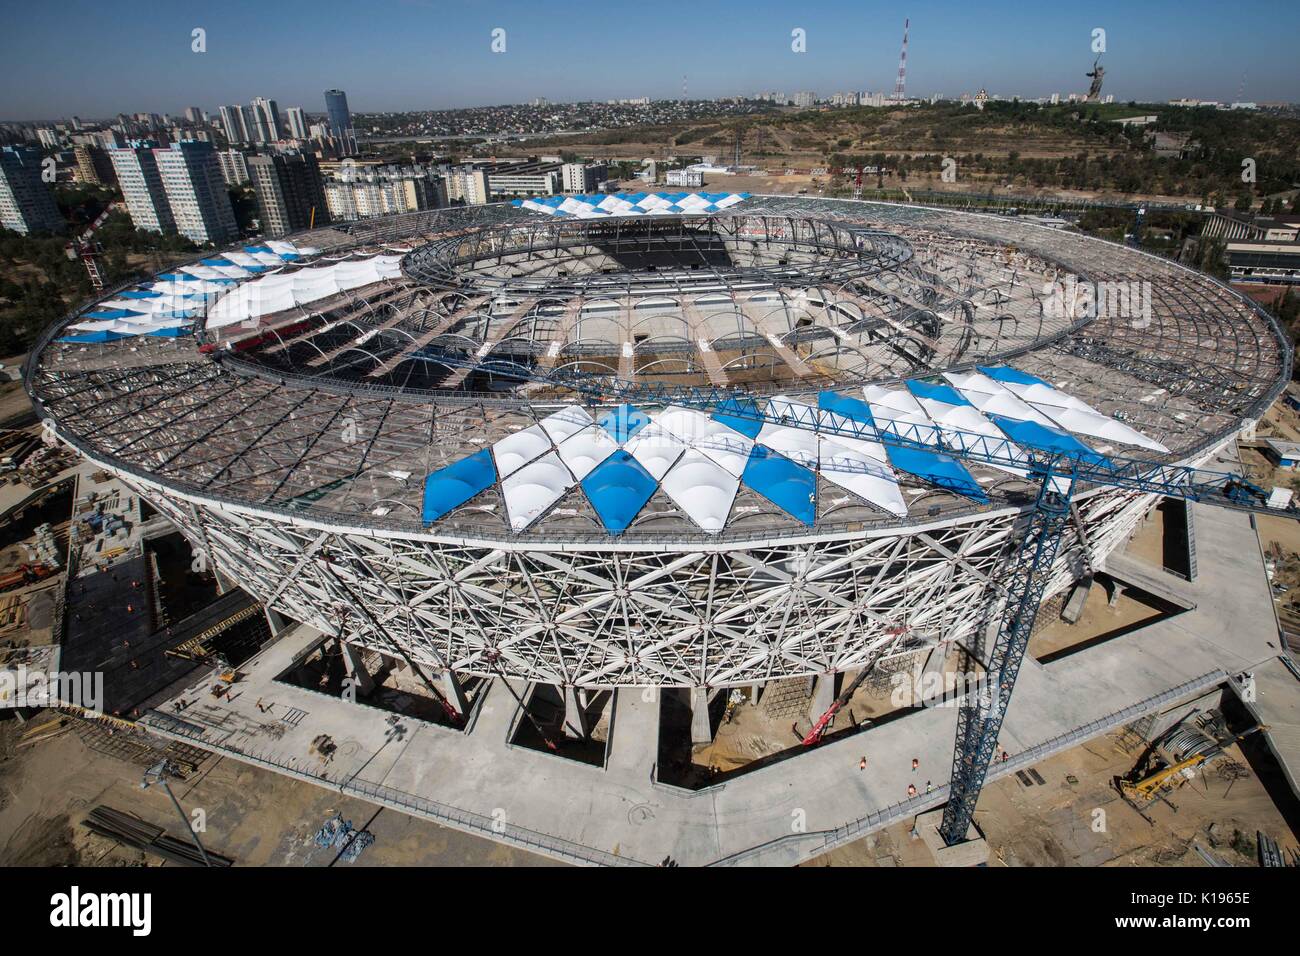 (170825) -- SARANSK, 25 août 2017 (Xinhua) -- Photo prise le 22 août indique l'Arène de Volgograd, qui situé sur la banque du fleuve Volga, accueillera 4 matchs de la phase de groupe de la Coupe du Monde FIFA 2018. L'arena a une capacité de 45061 personnes. Selon les responsables, l'arène sera terminé au mois de décembre 2017. (Xinhua/Wu Zhuang) Banque D'Images